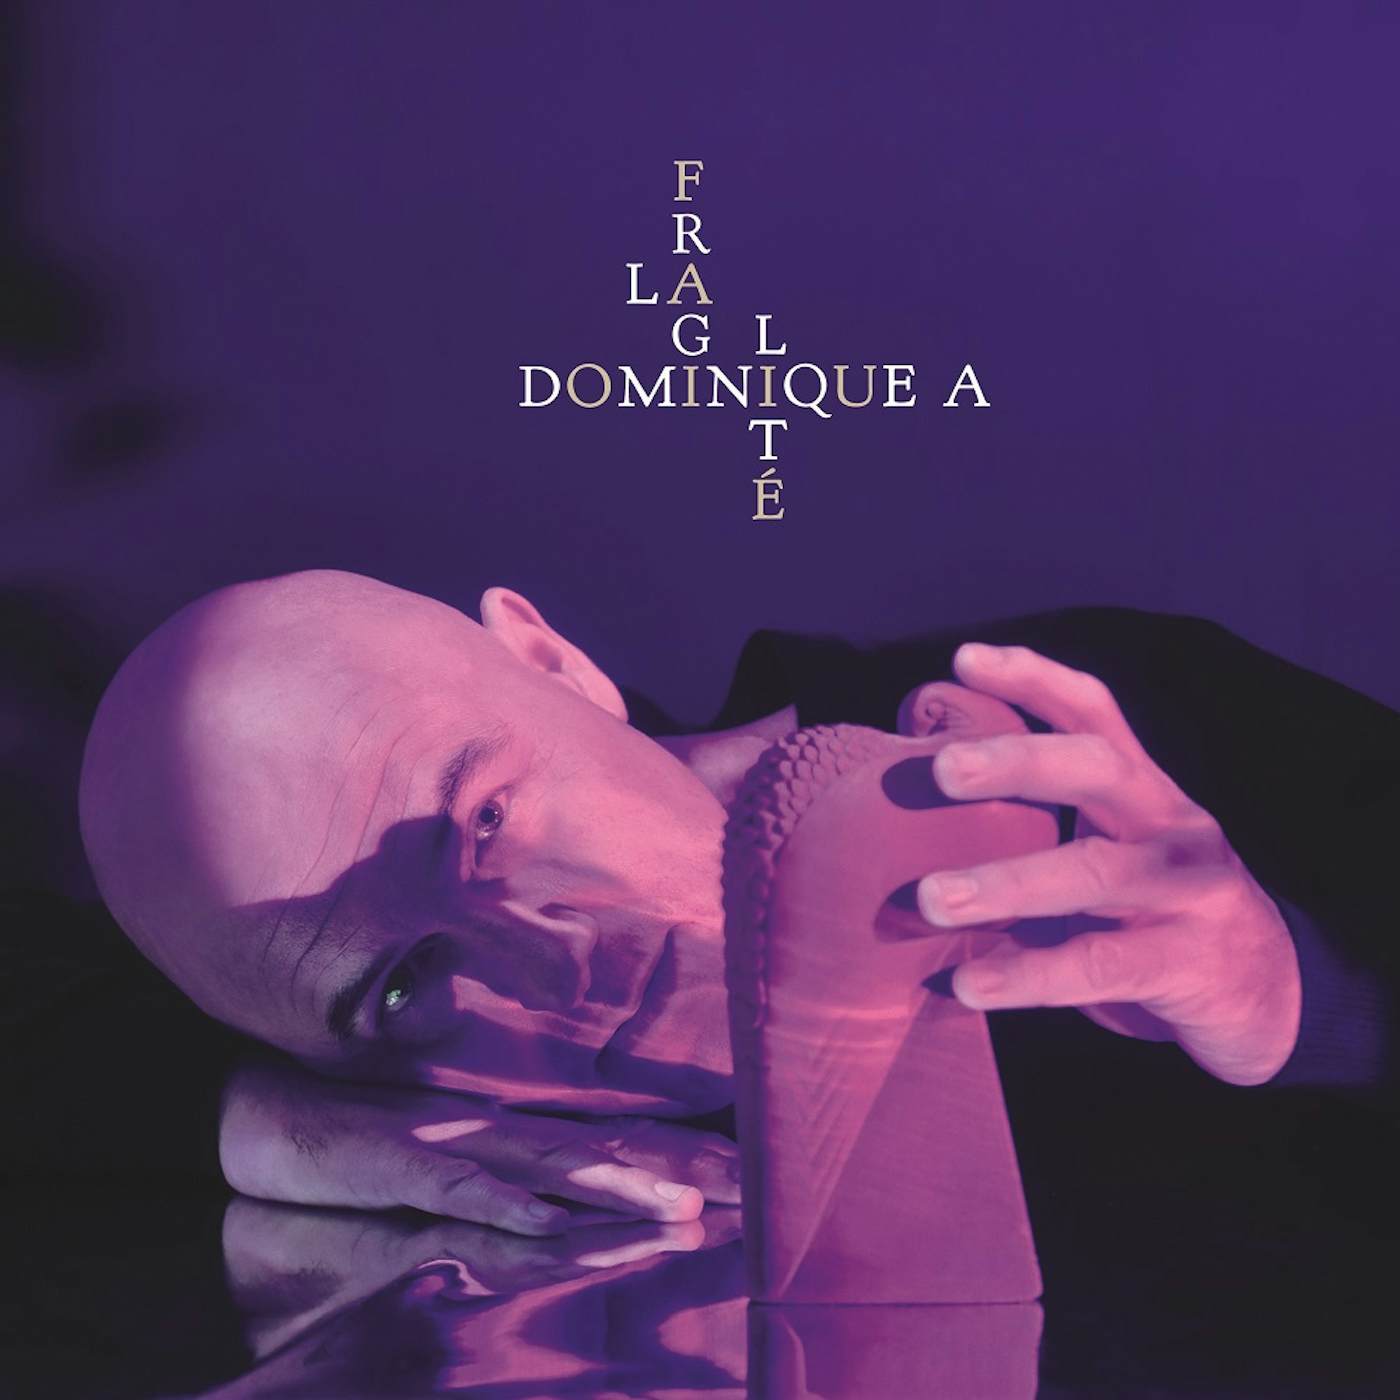 Dominique A LA FRAGILITE CD